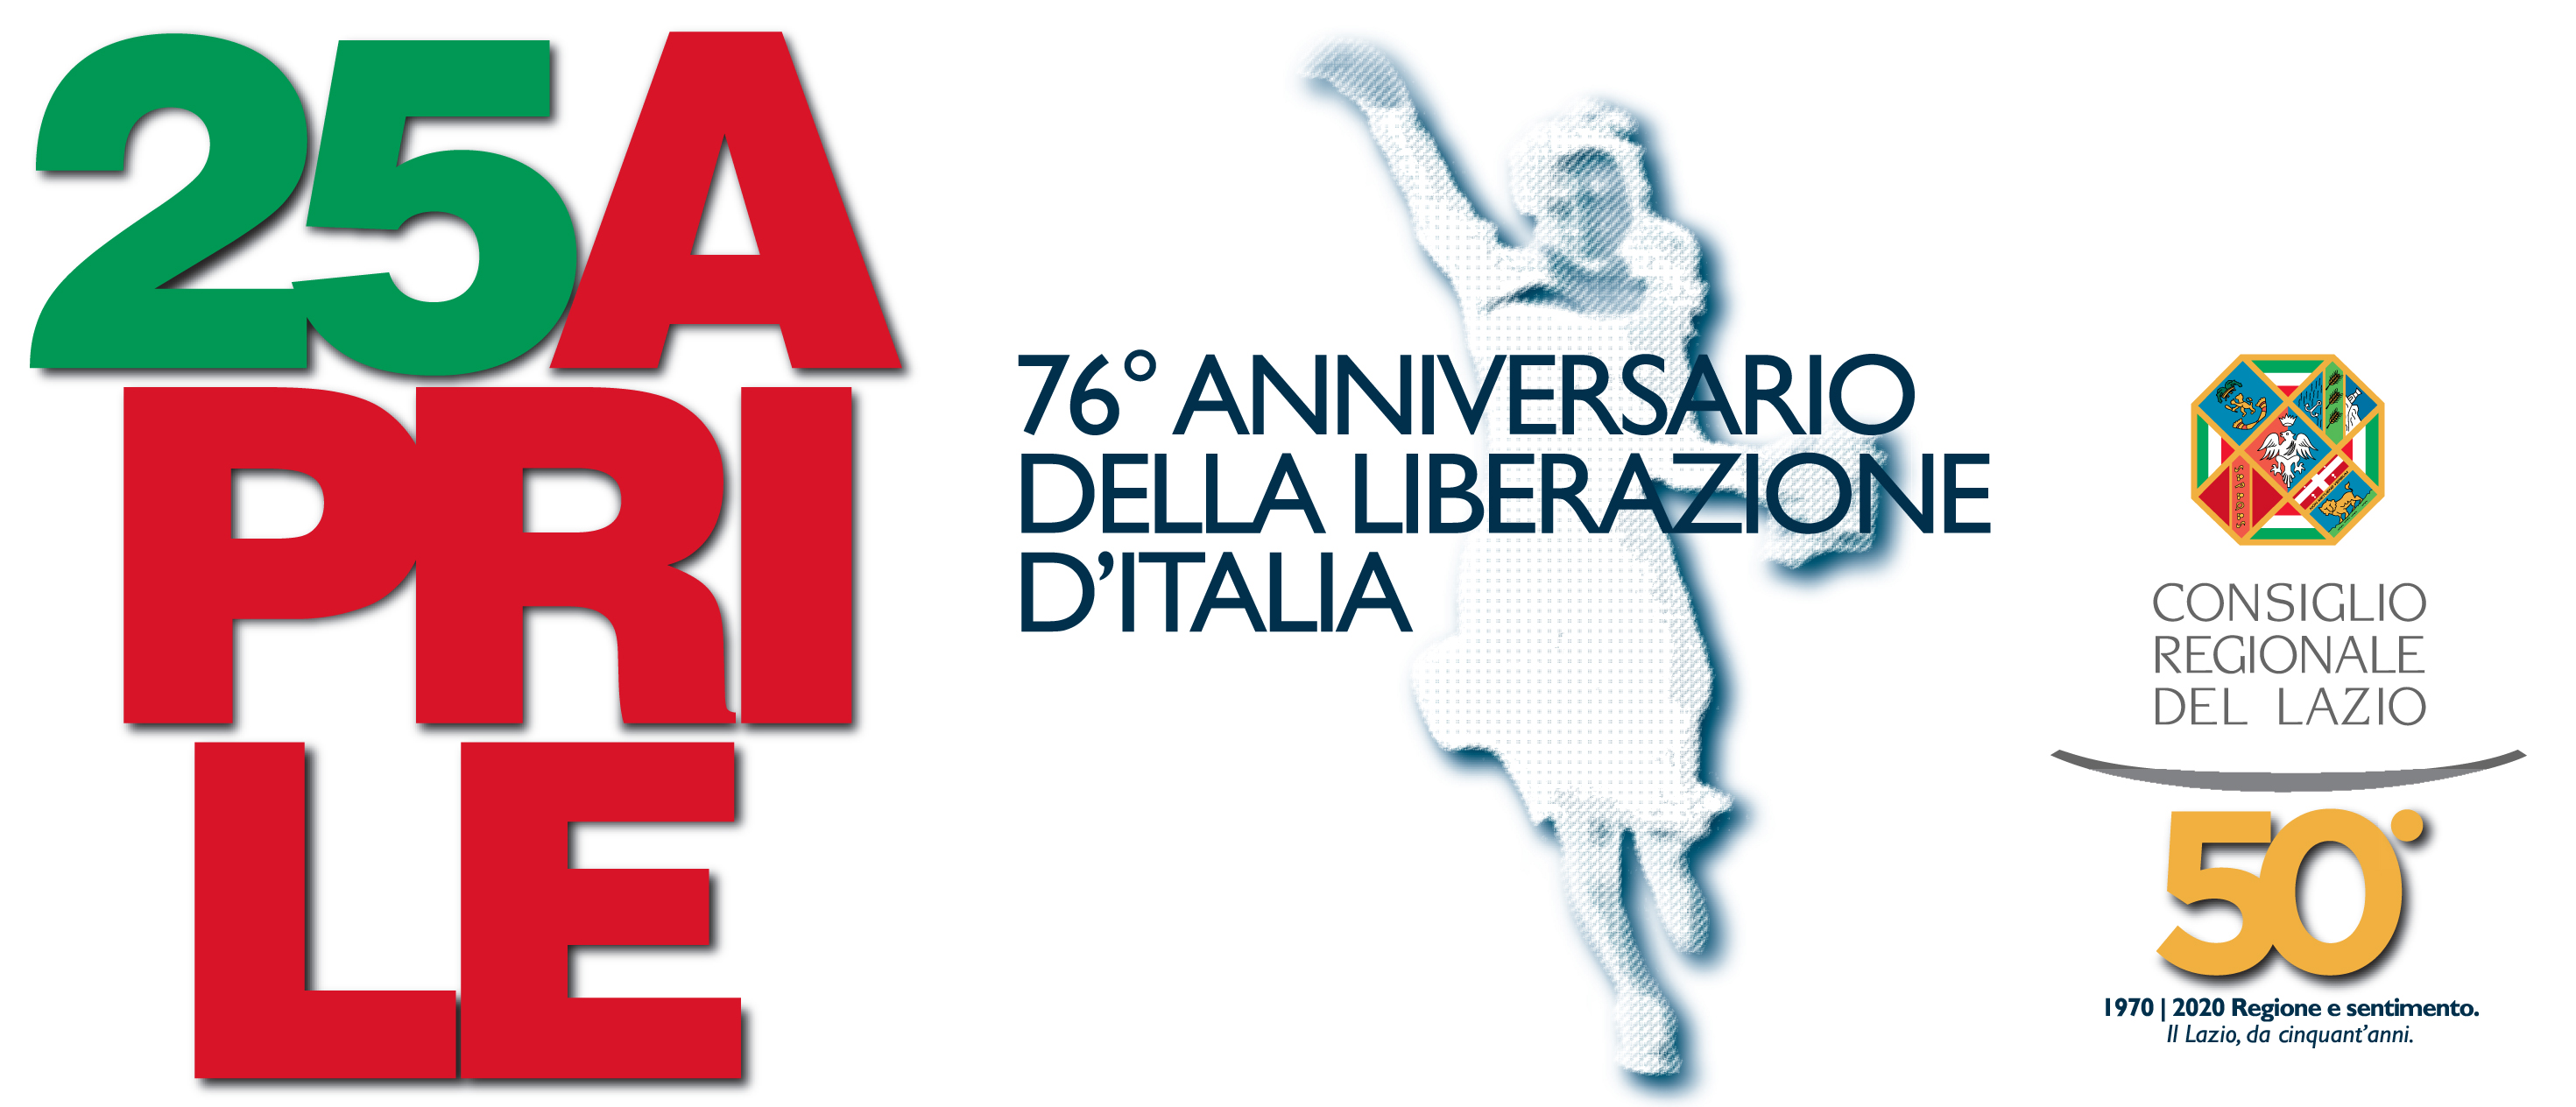 25 Aprile - 76 Anniversario della Liberazione d'Italia